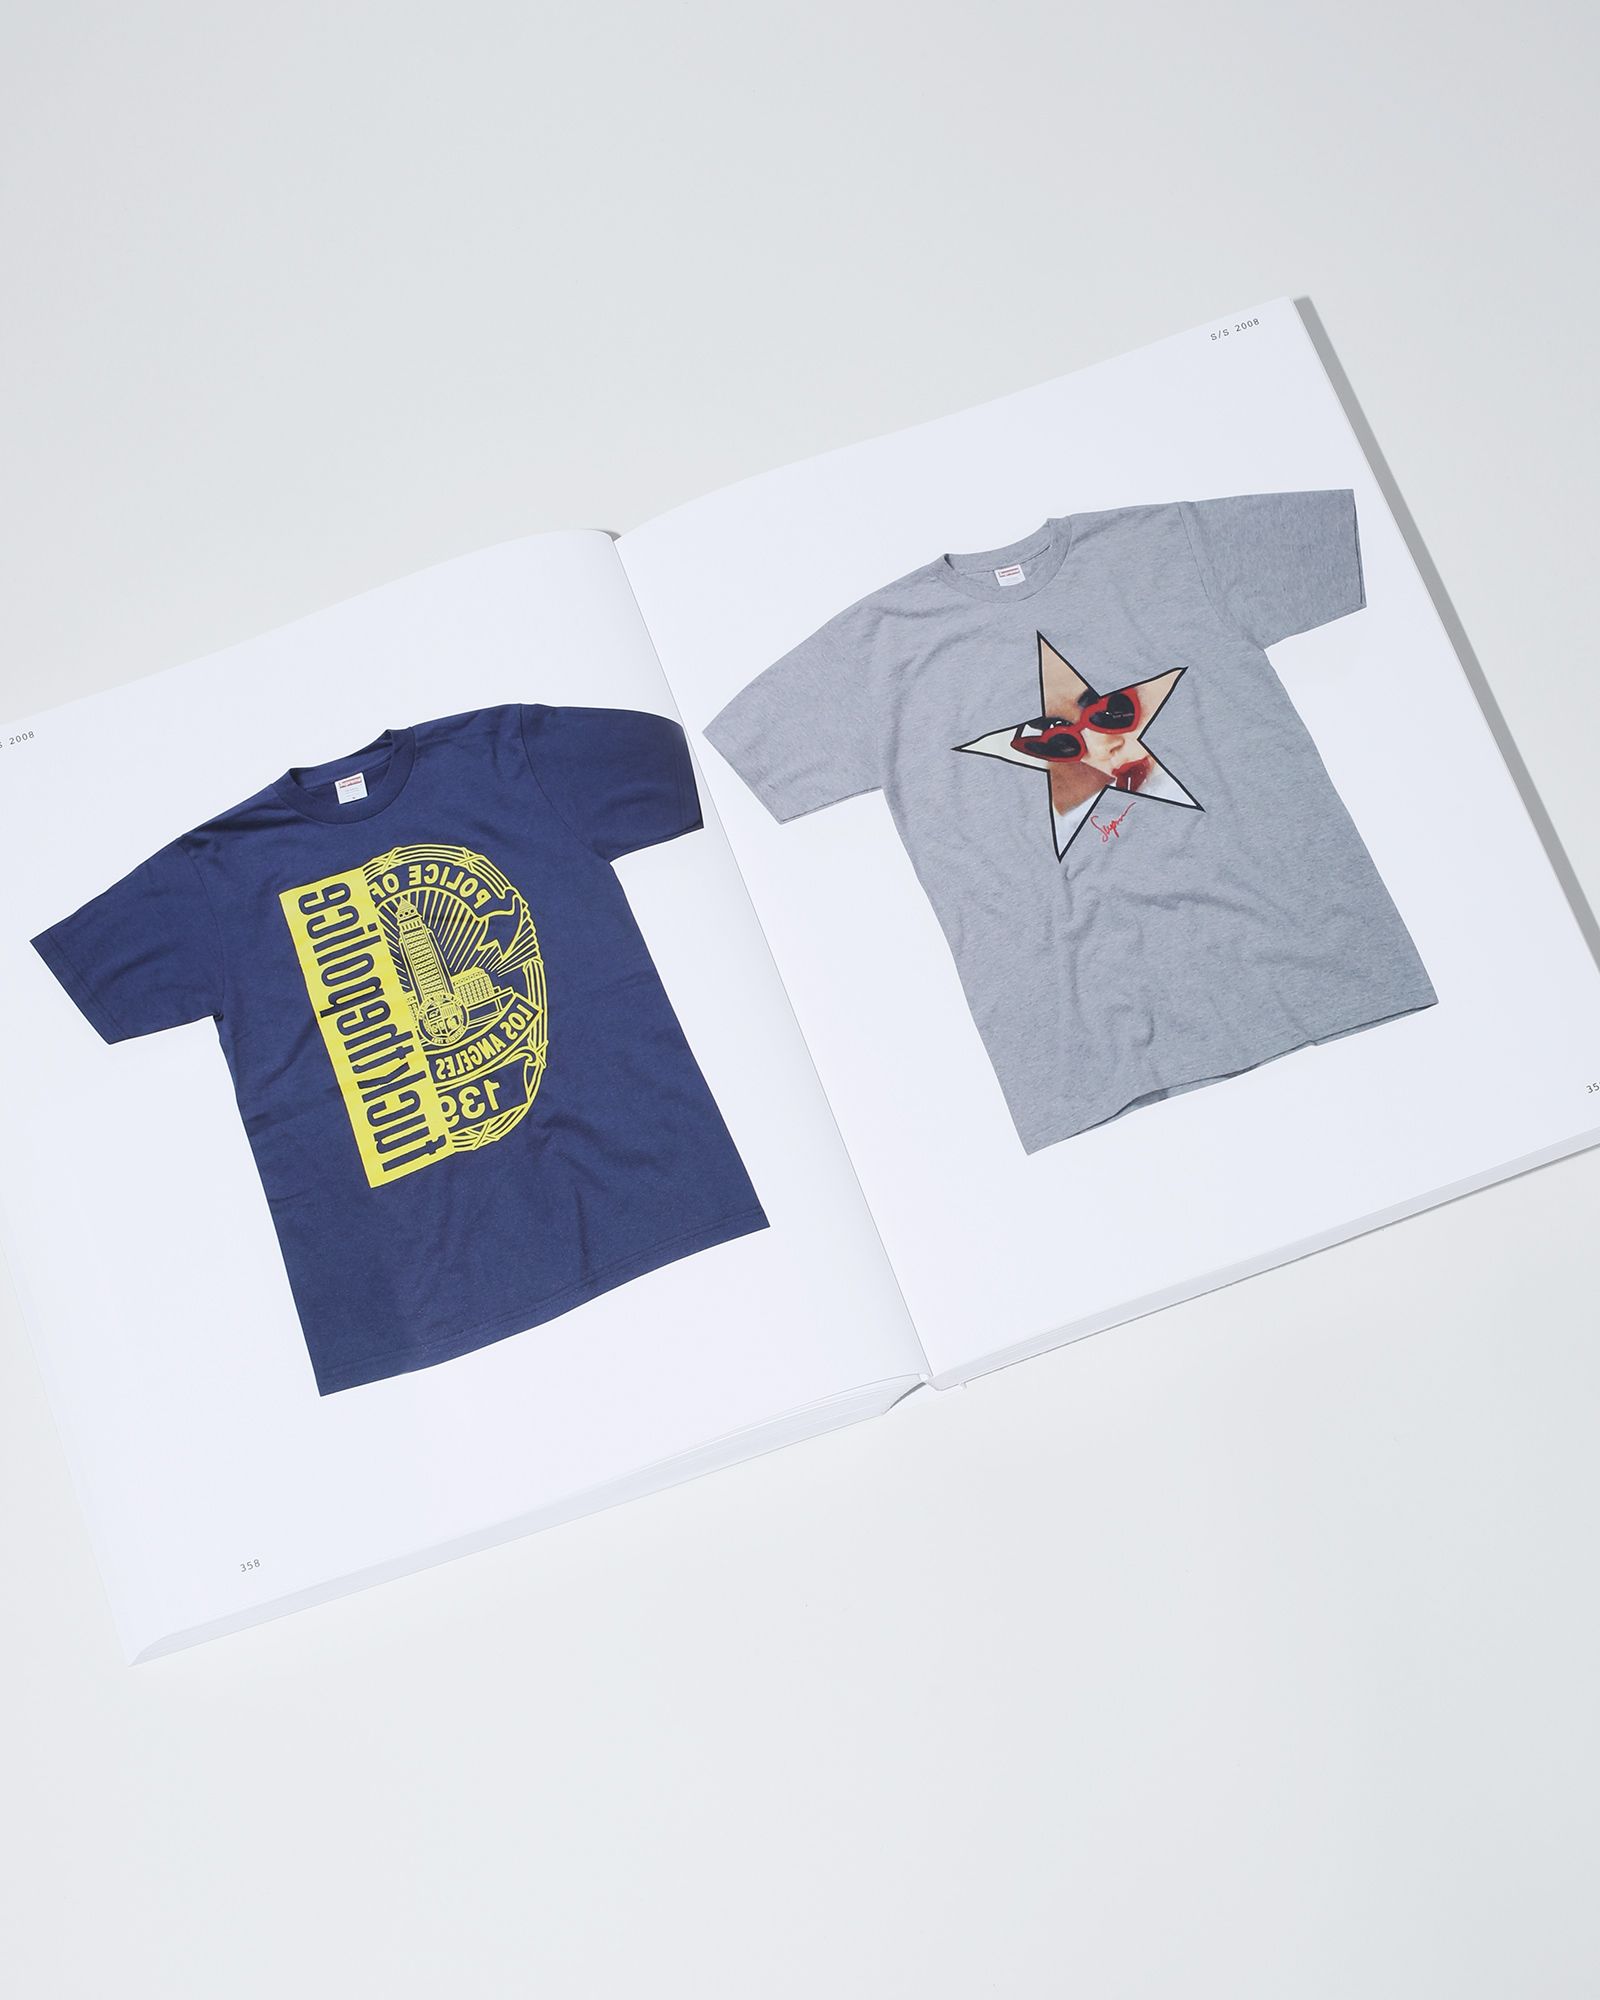 18,480円Supreme 30 Years T-Shirts 1994-2024 Book